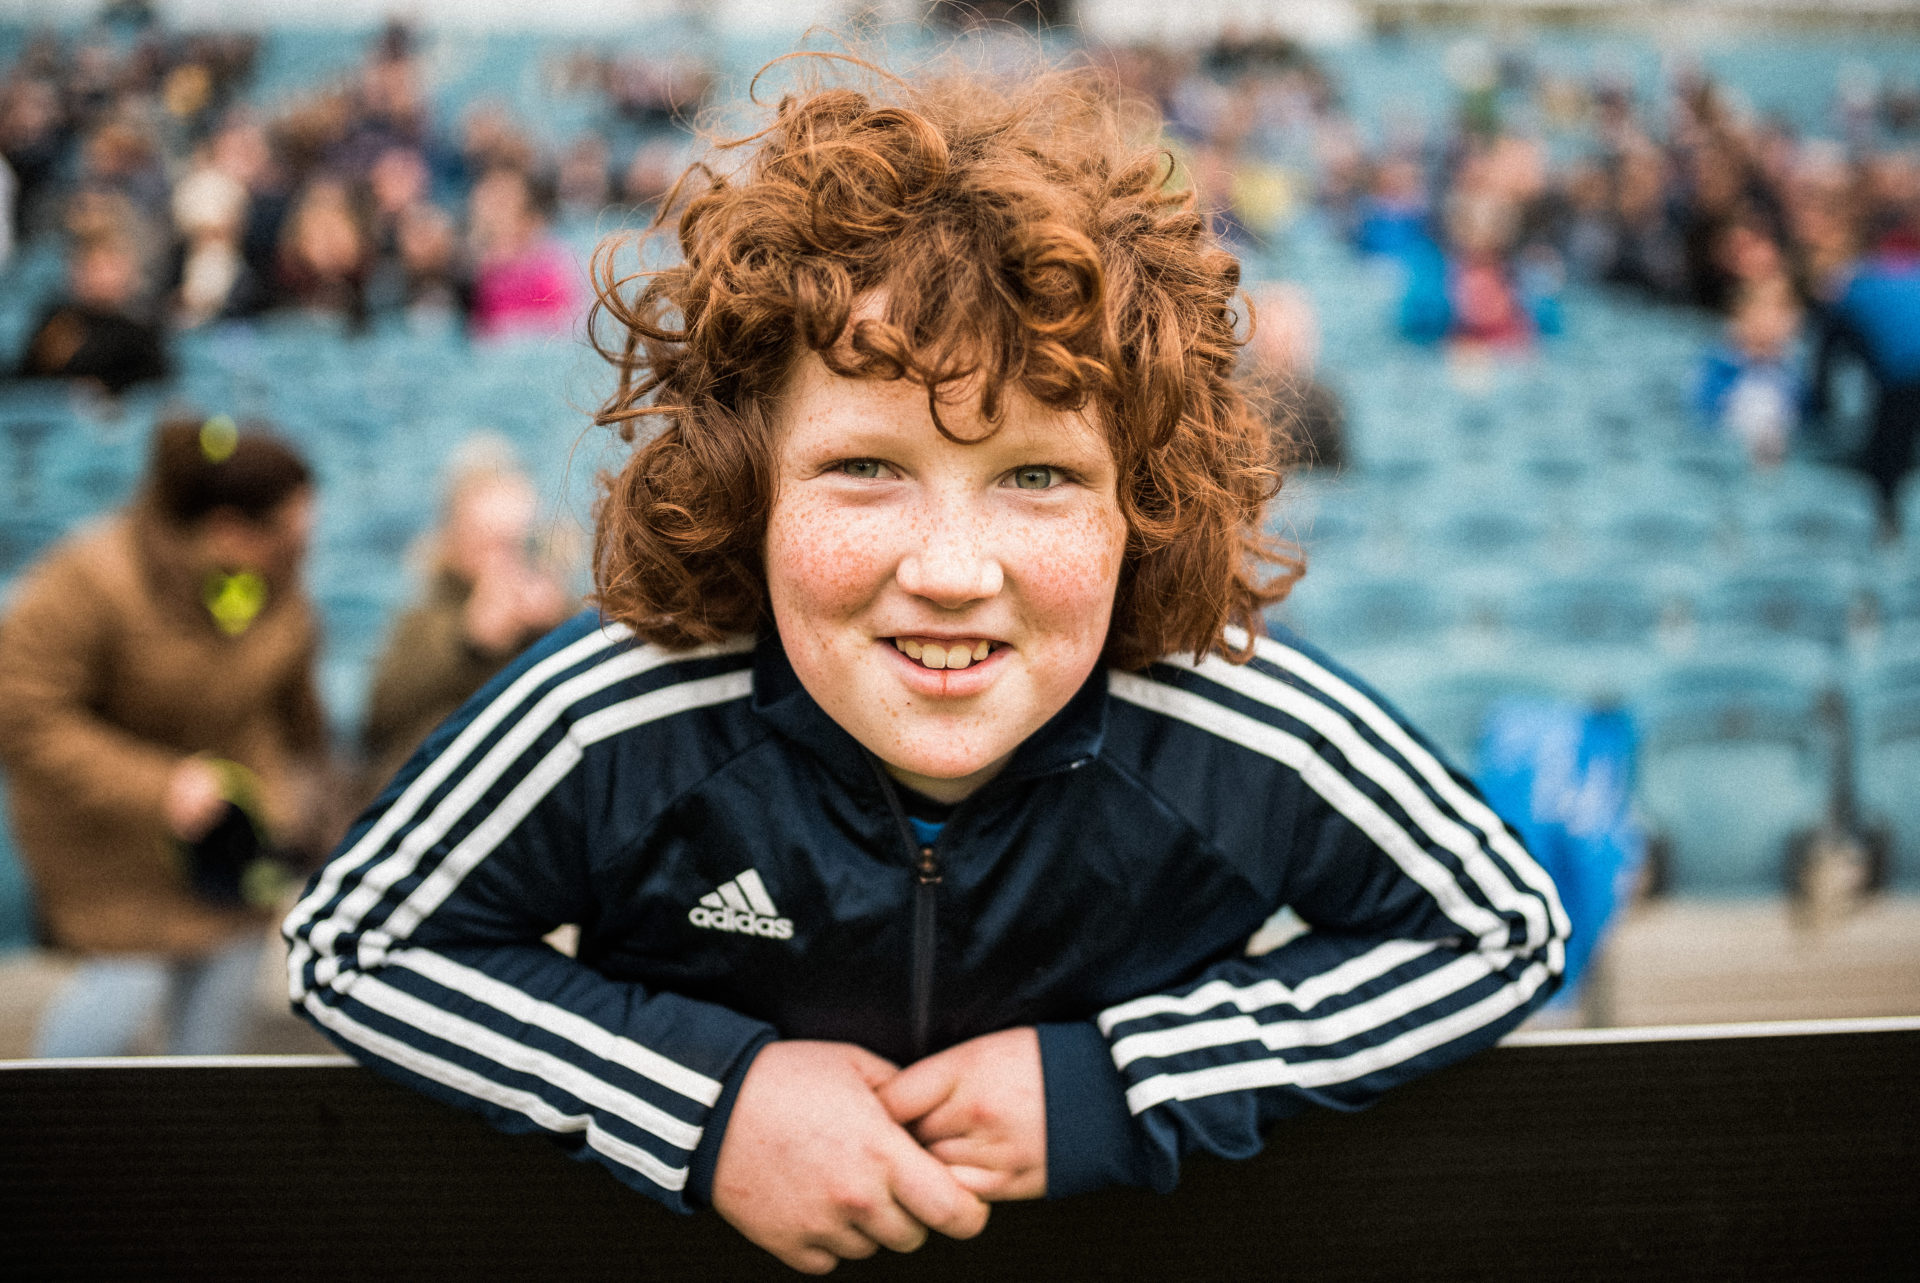 Portrait d'un enfant au cheveux roux frisé et en tenue de sport adidas, souriant dans les gradins d'un stade